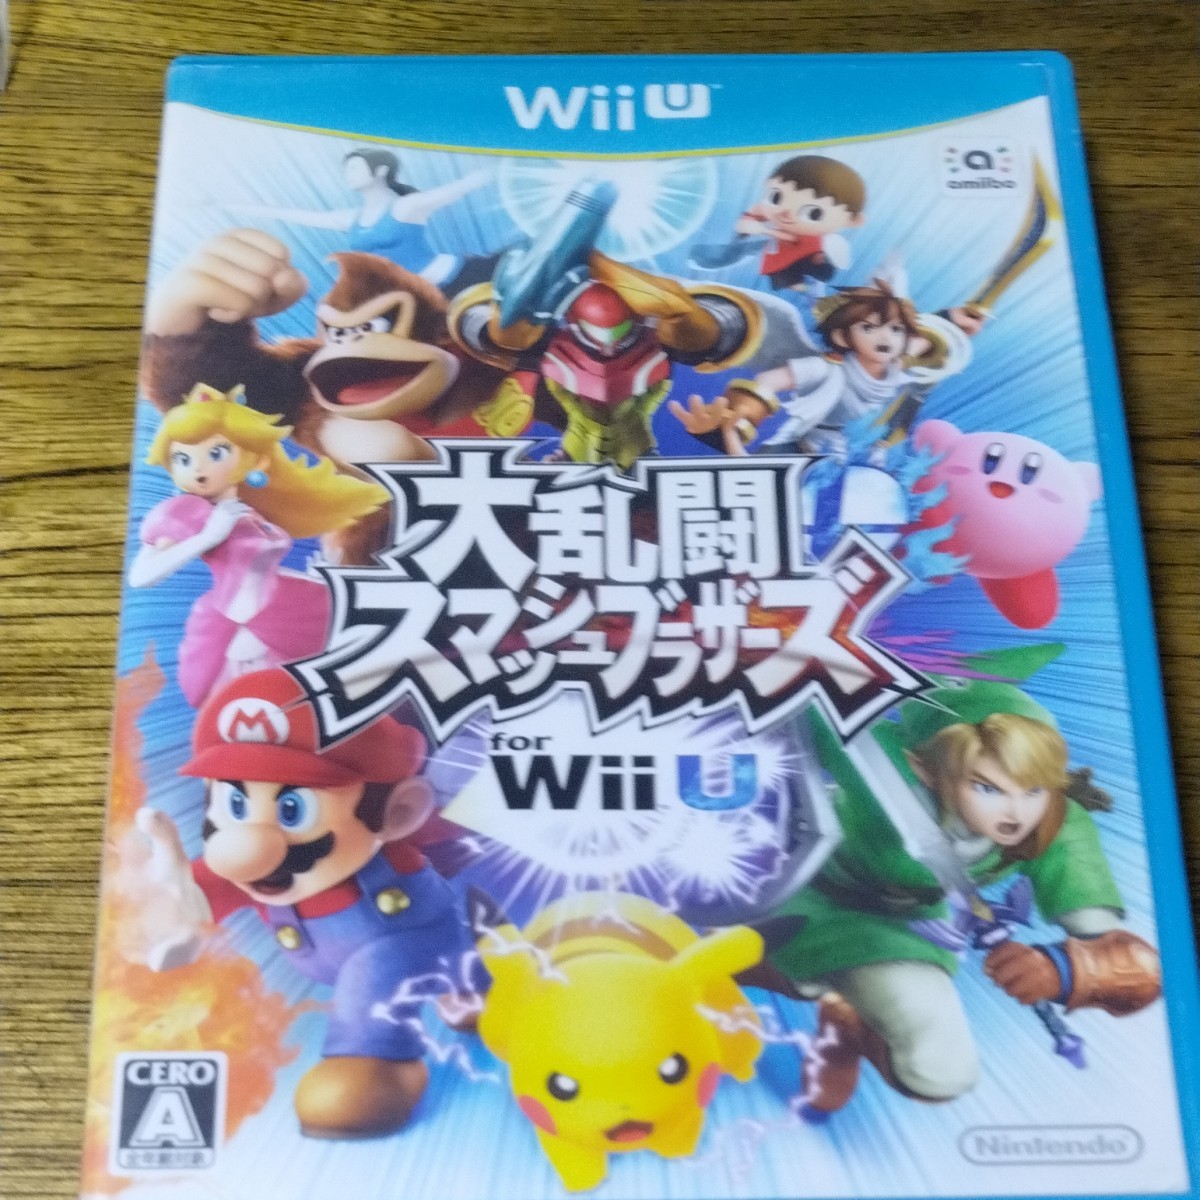 大乱闘スマッシュブラザーズfor Wii U